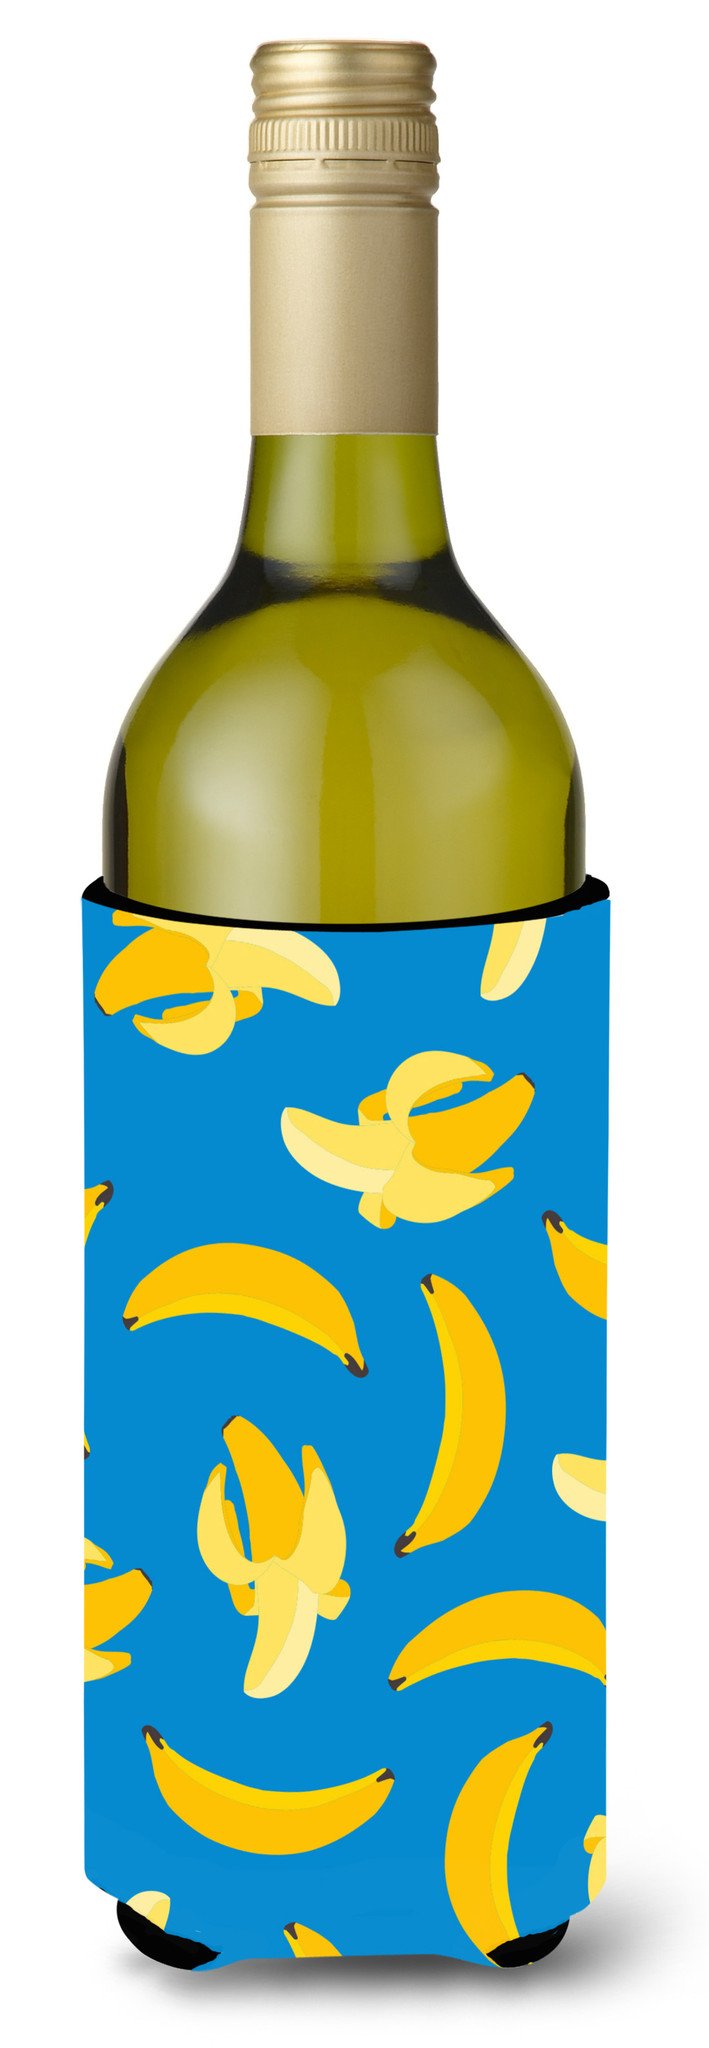 Bananas on Blue Wine Bottle Beverge Insulator Hugger BB5149LITERK by Caroline's Treasures